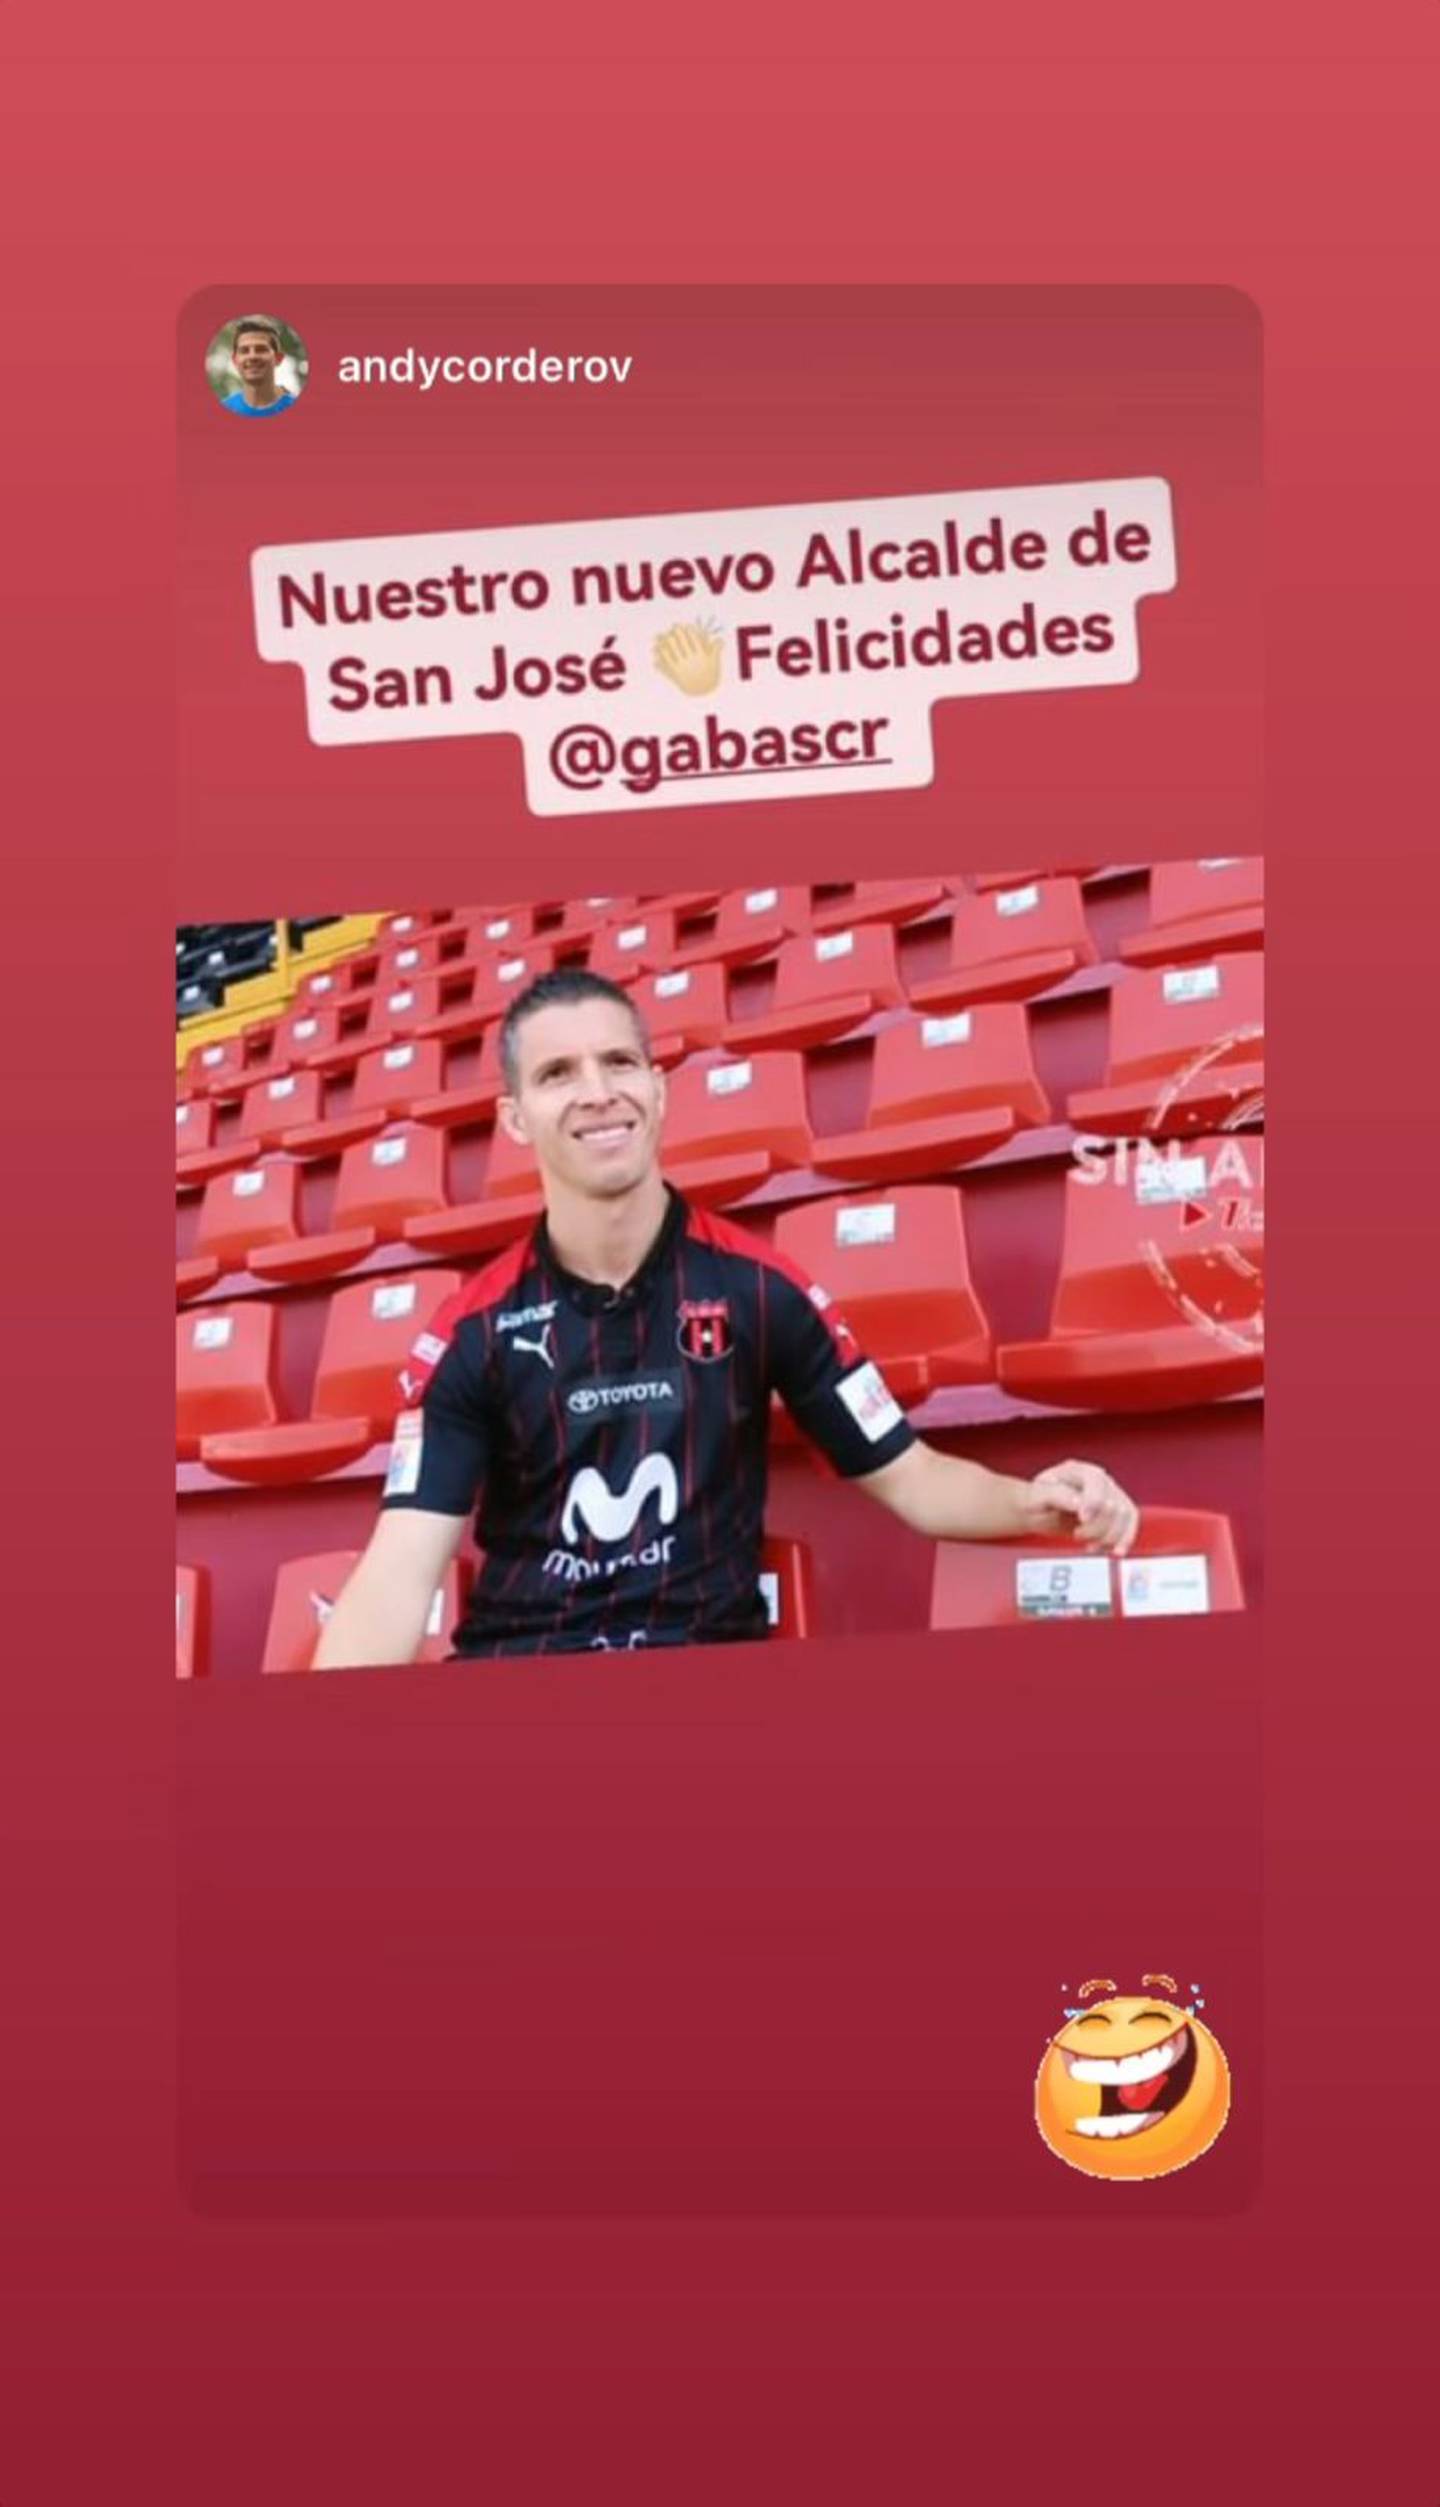 Hasta en Instagram ha respondido Pablo Gabas mensajes de sus seguidores por la comparación.